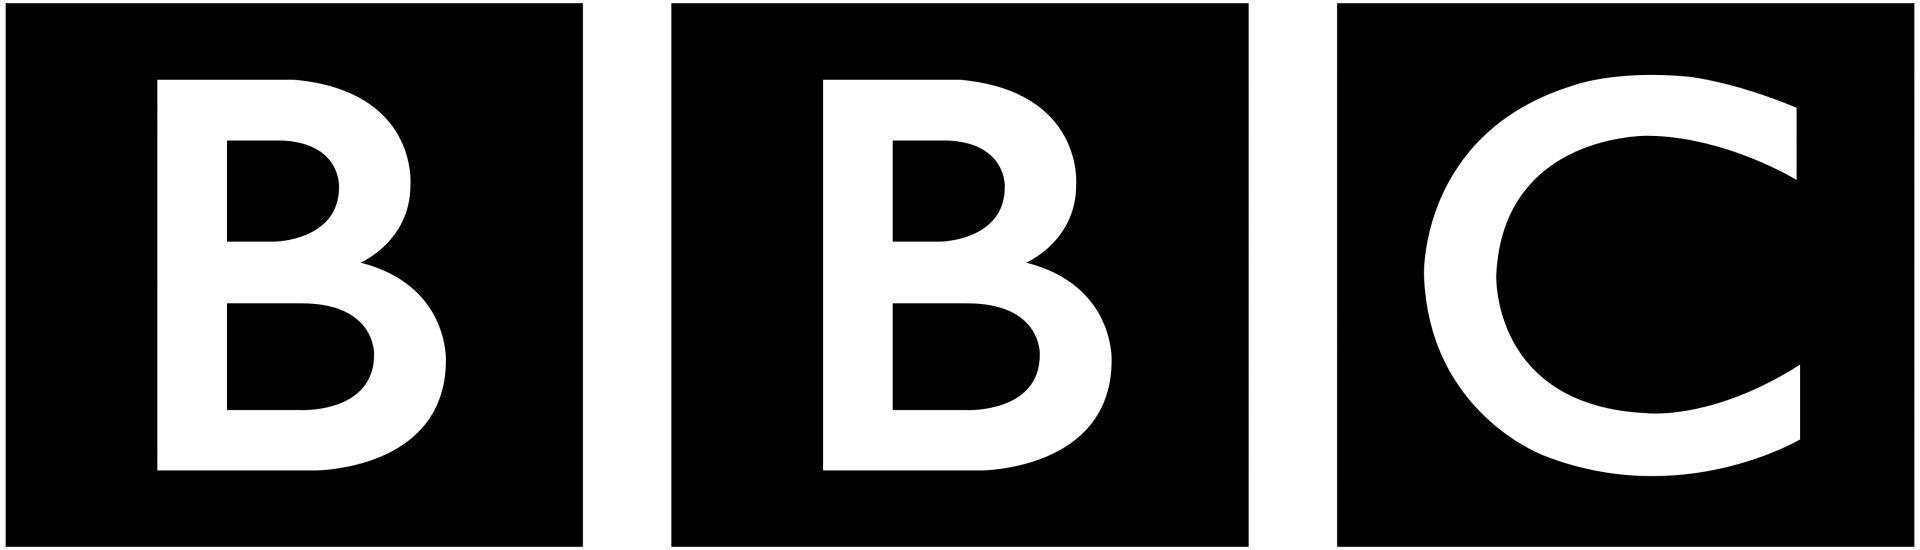 logo for BBC